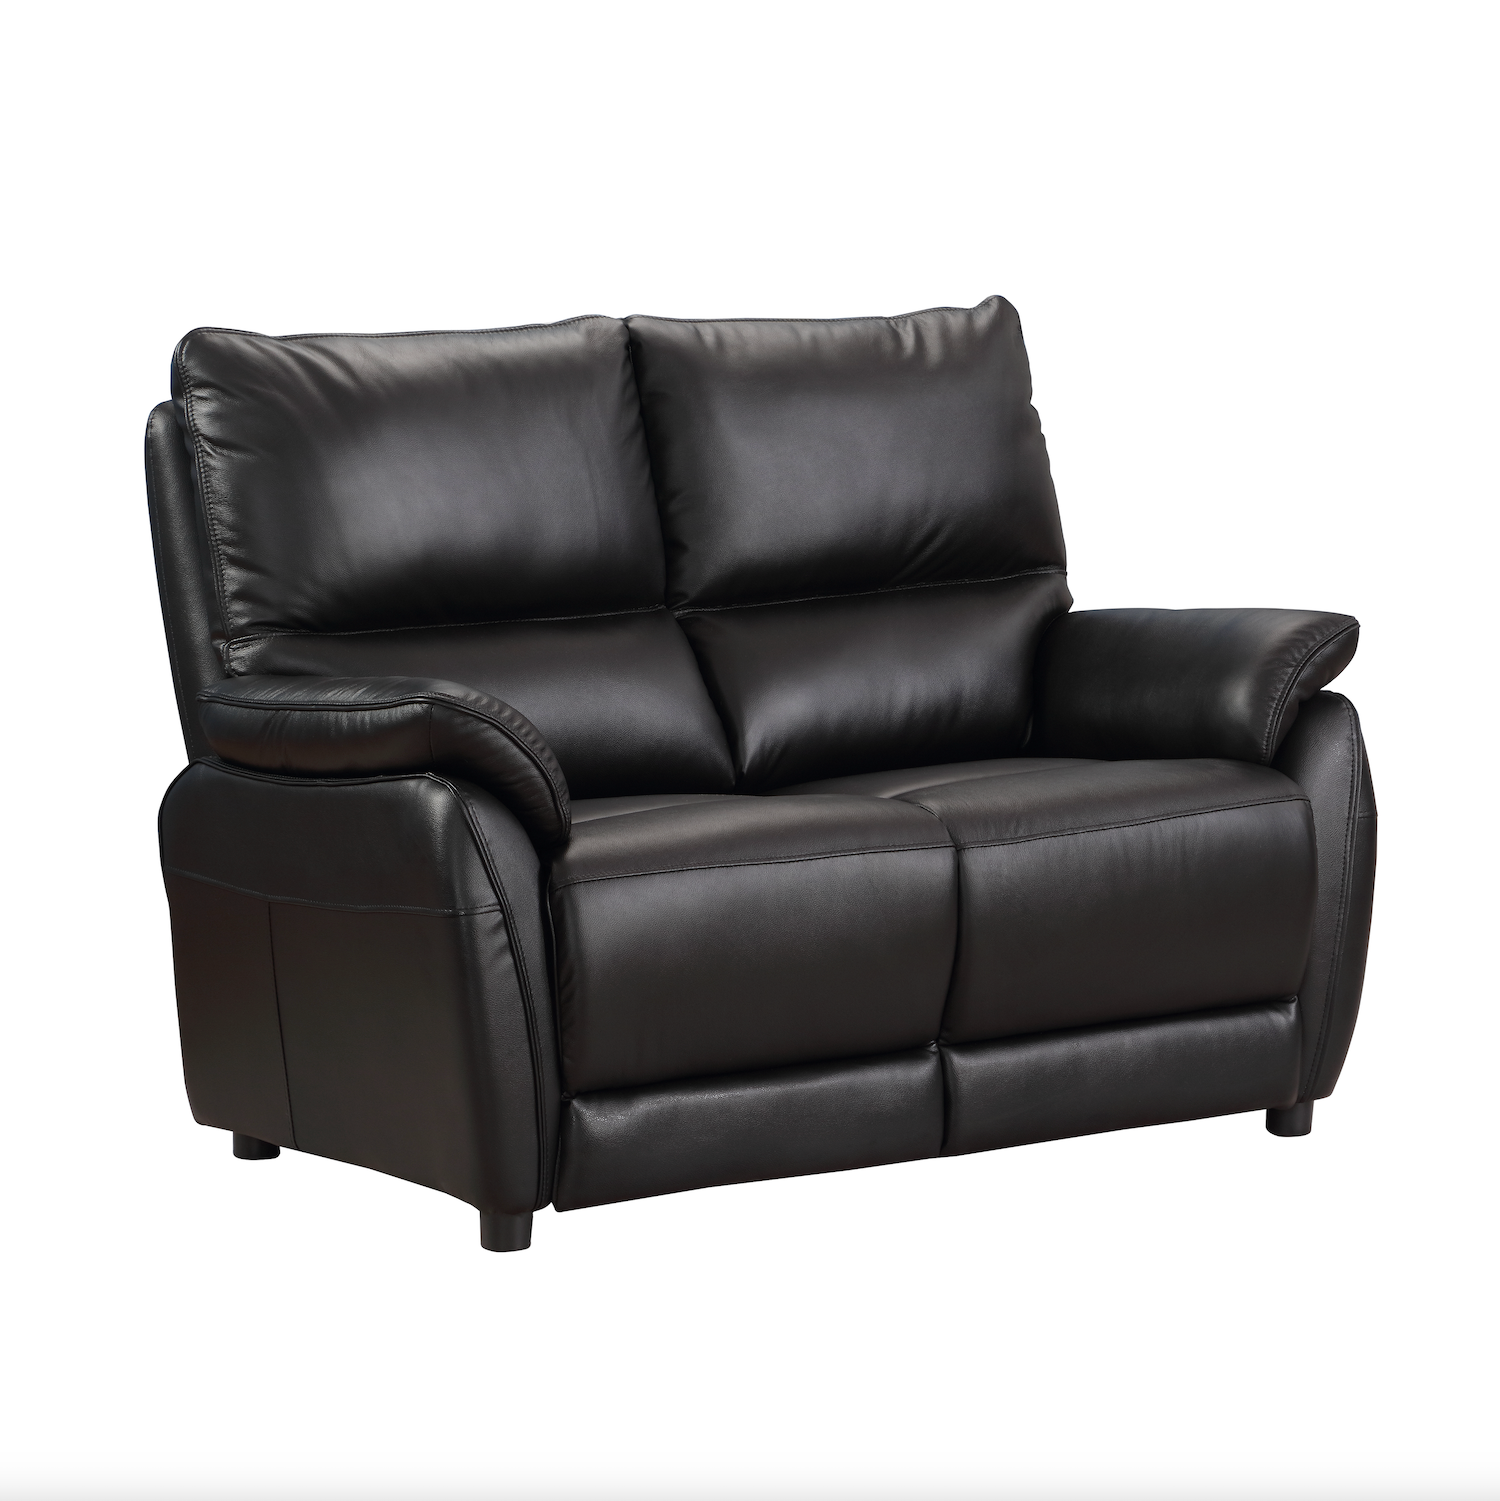 Esprit 2 Seater Static Sofa Black Leather